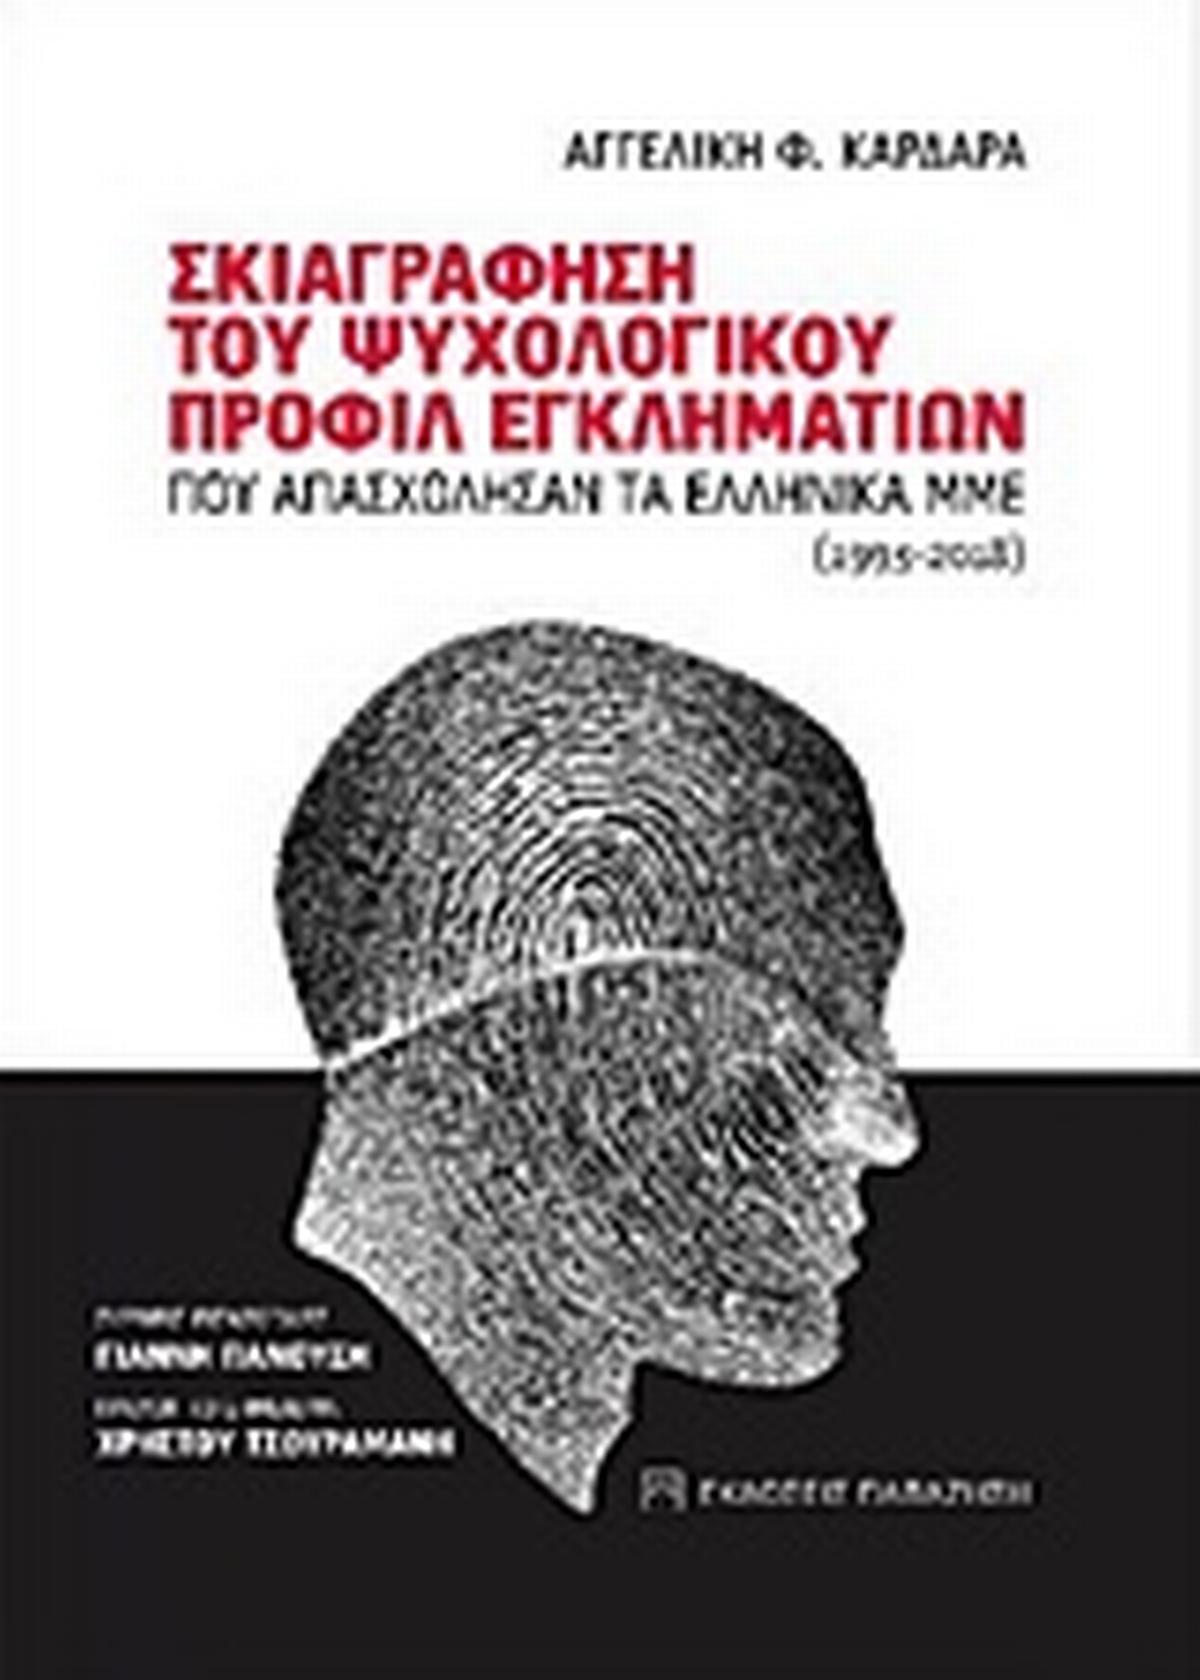 Σκιαγράφηση του ψυχολογικού προφίλ εγκληματιών που απασχόλησαν τα ελληνικά ΜΜΕ (1993-2018)